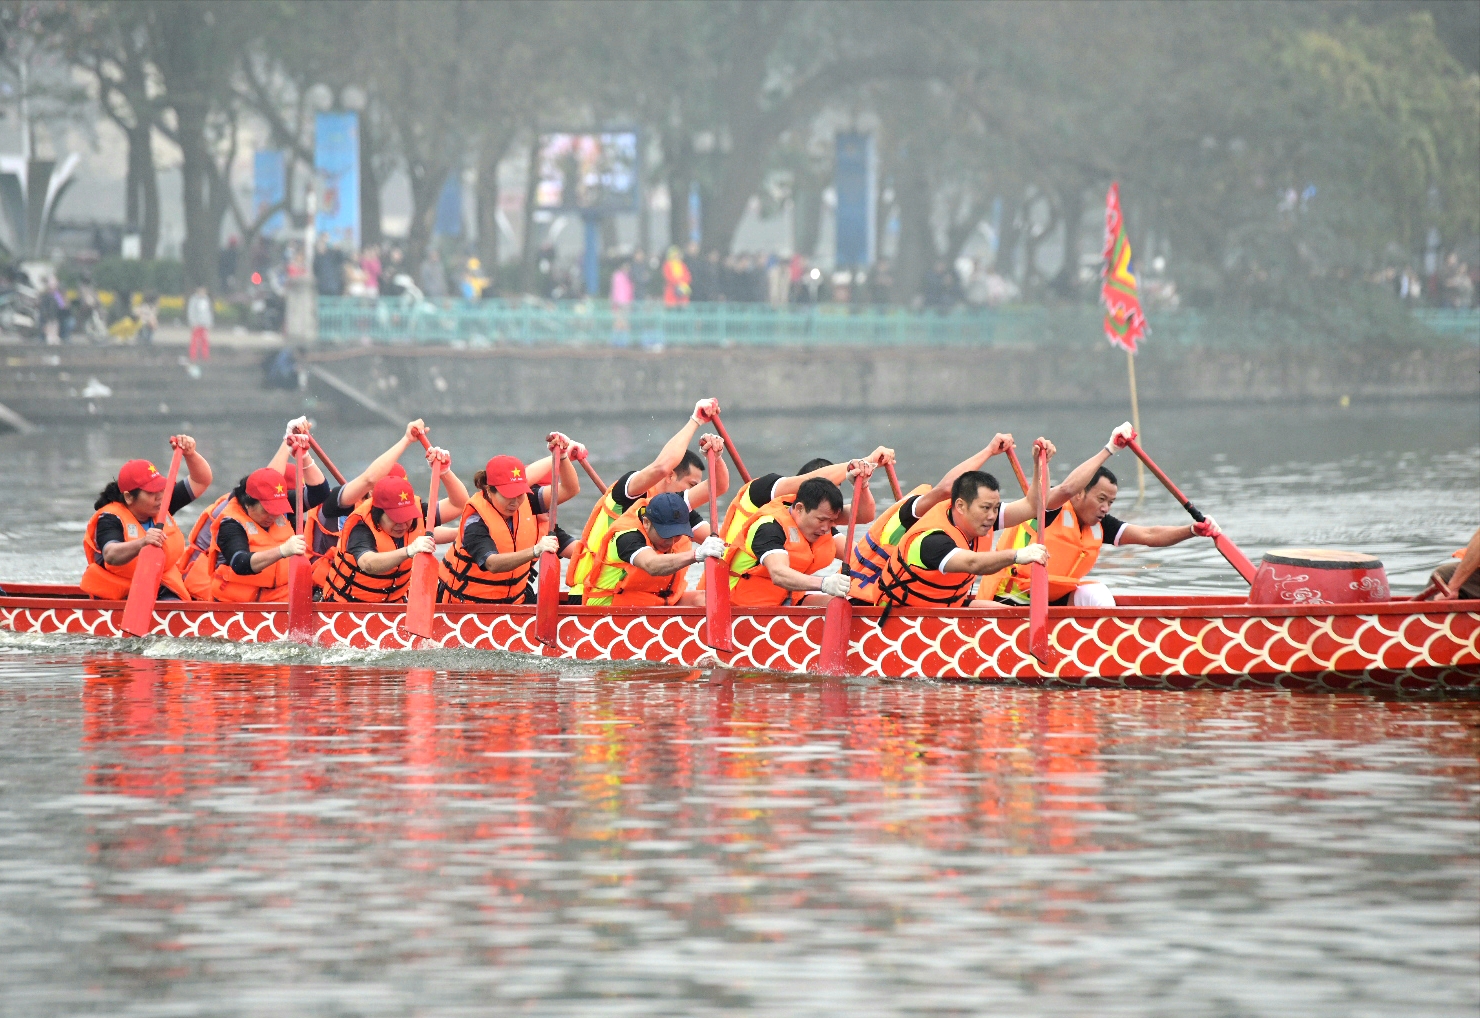 Hà Nội và Vietnam Airlines tổ chức thành công lễ hội bơi chải thuyền rồng đầu tiên tại Hồ Tây